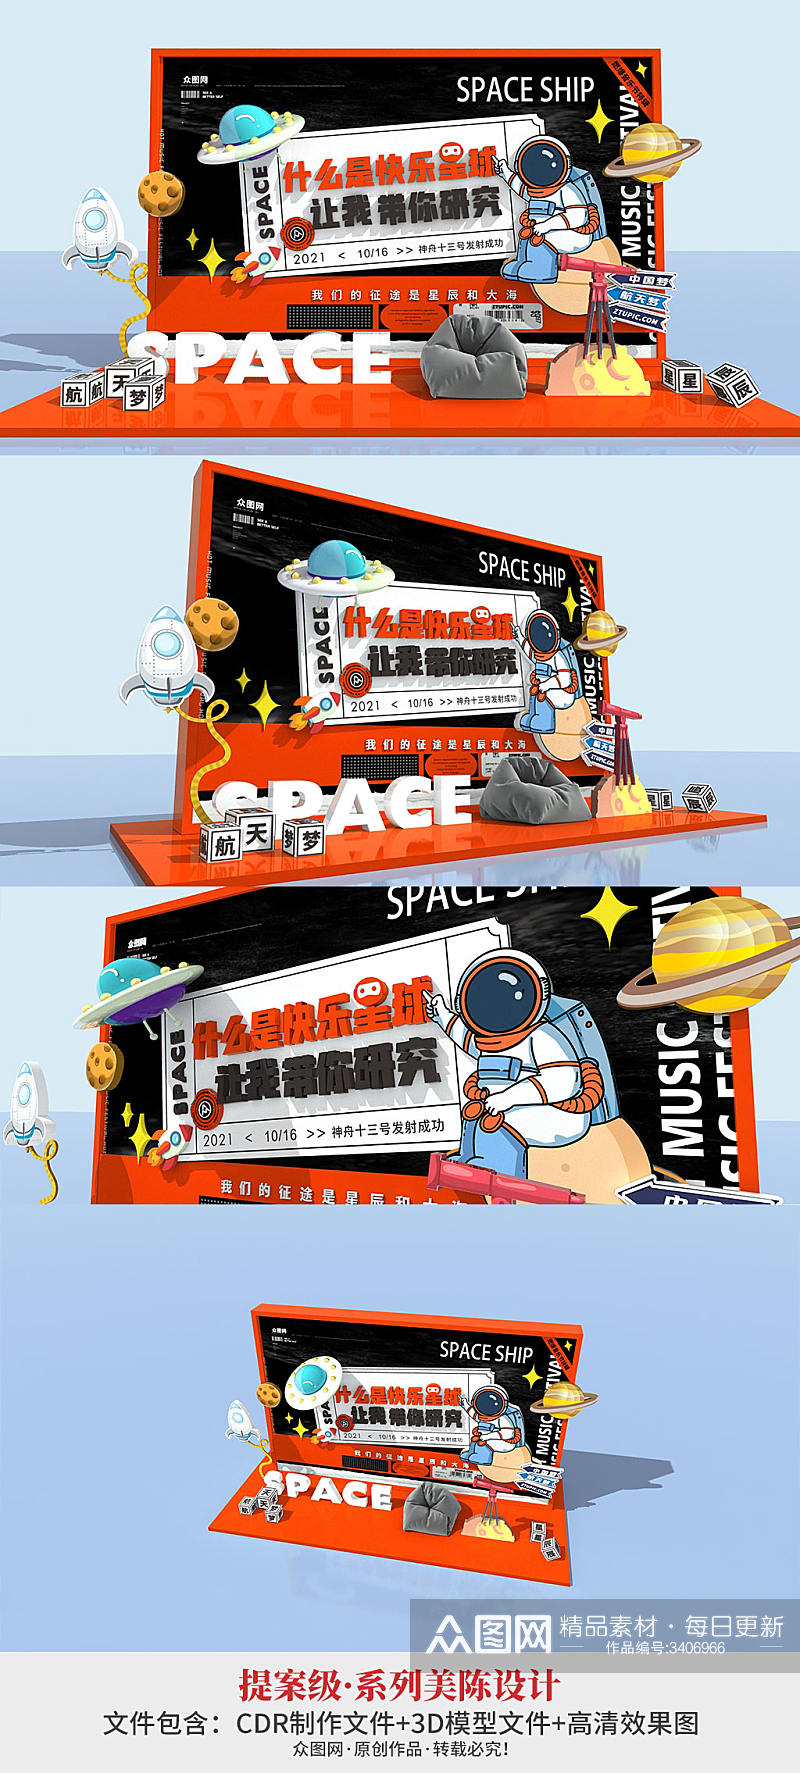 中国航天日 创意网红太空航天宇航员主题美陈pd点素材